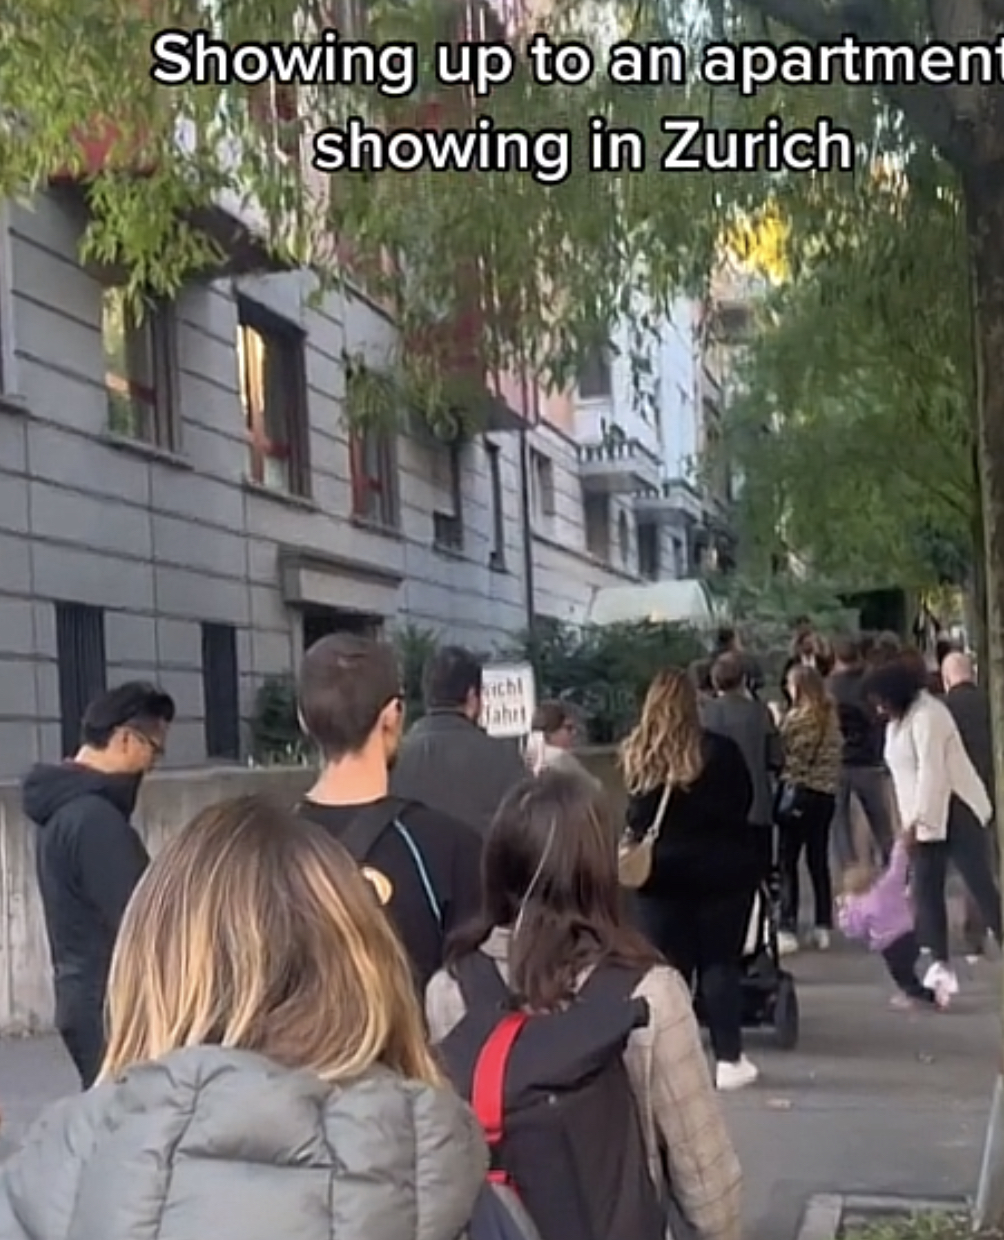 Zurich rent